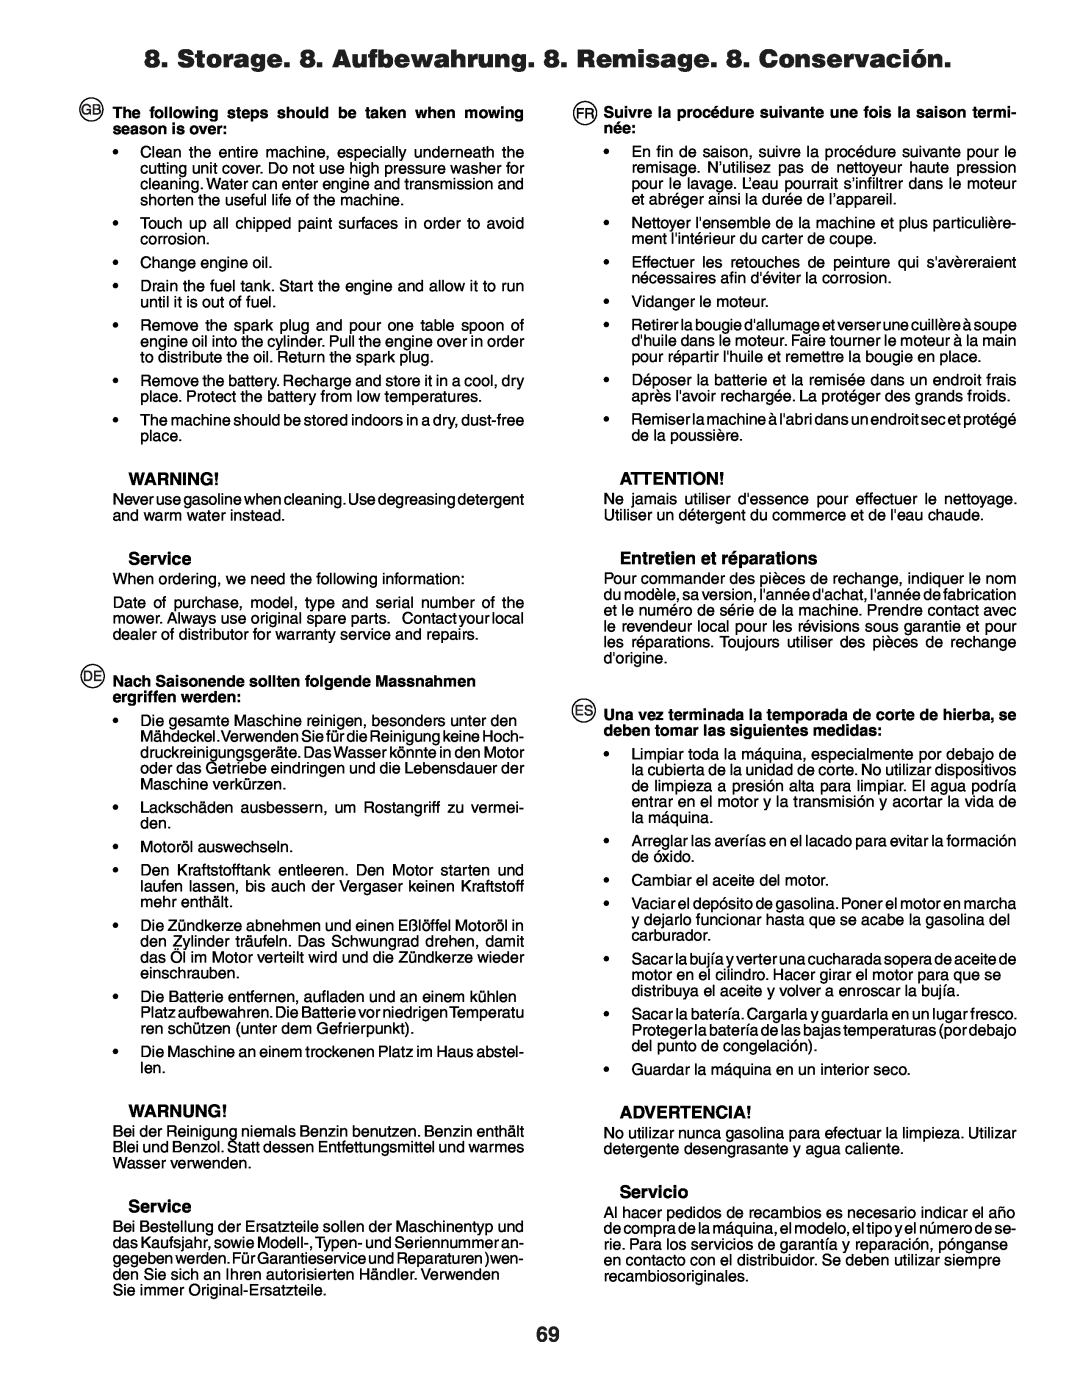 Husqvarna YTH150XP instruction manual Service, Warnung, Entretien et réparations, Advertencia, Servicio 